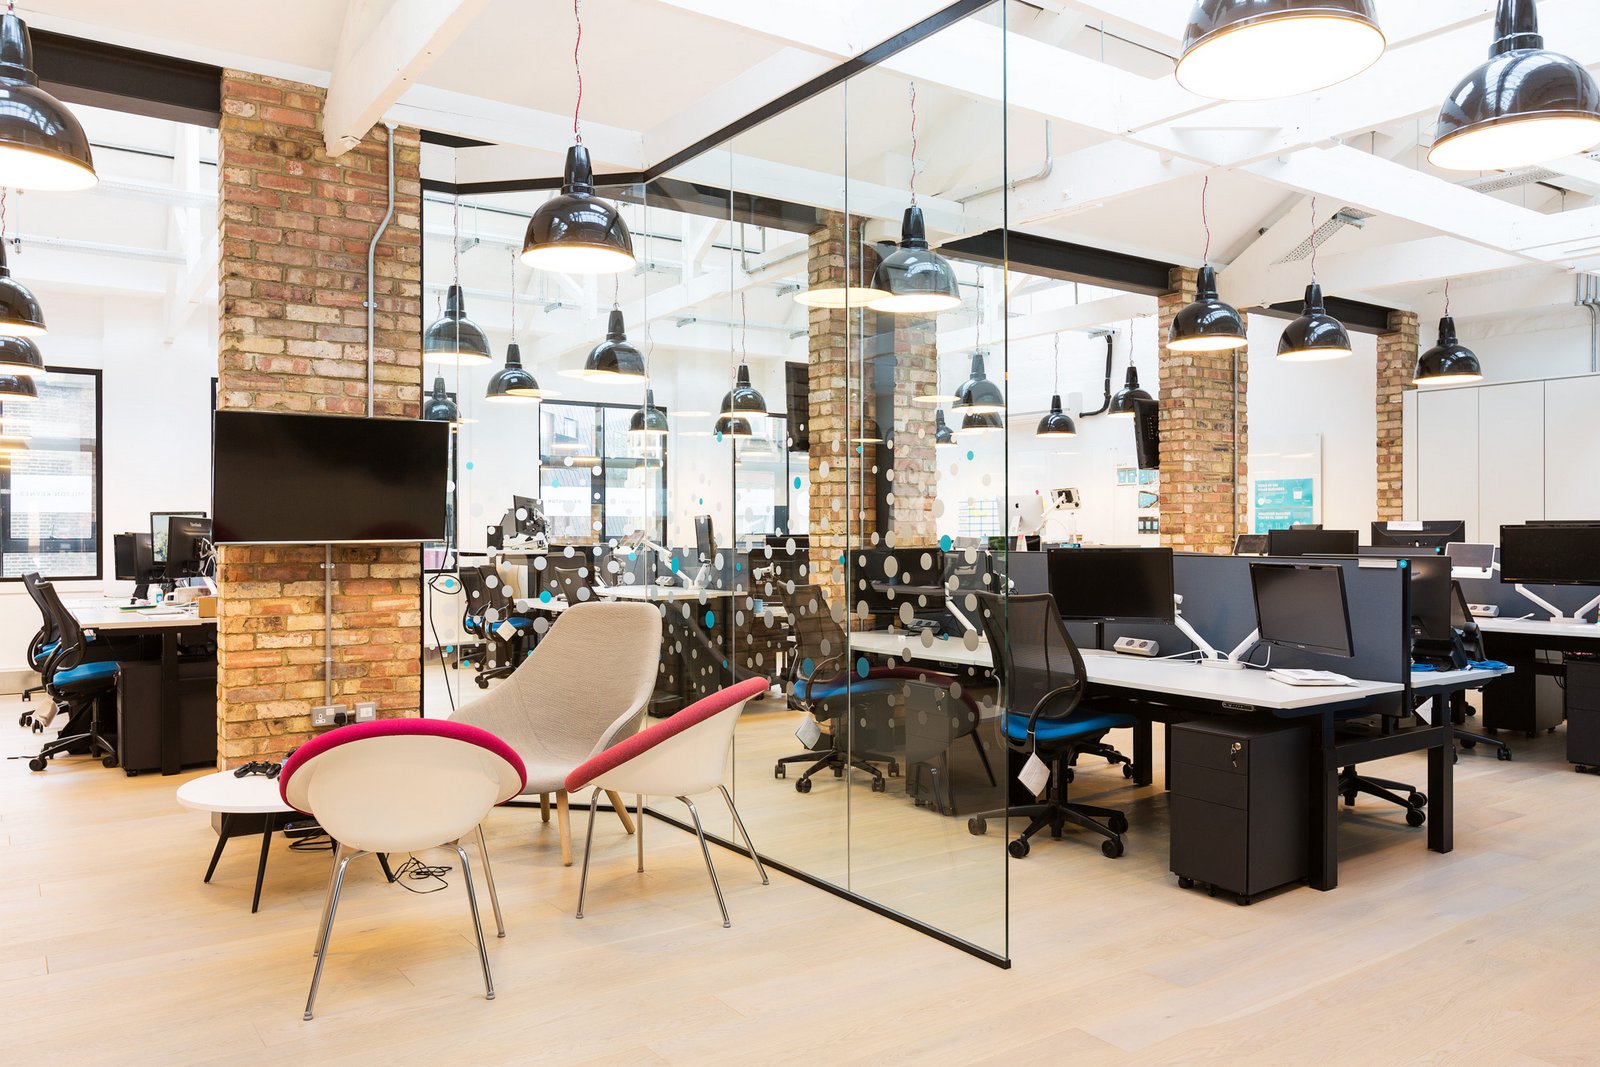 21+ Office Ceiling Designs, Decorating Ideas | Design ...